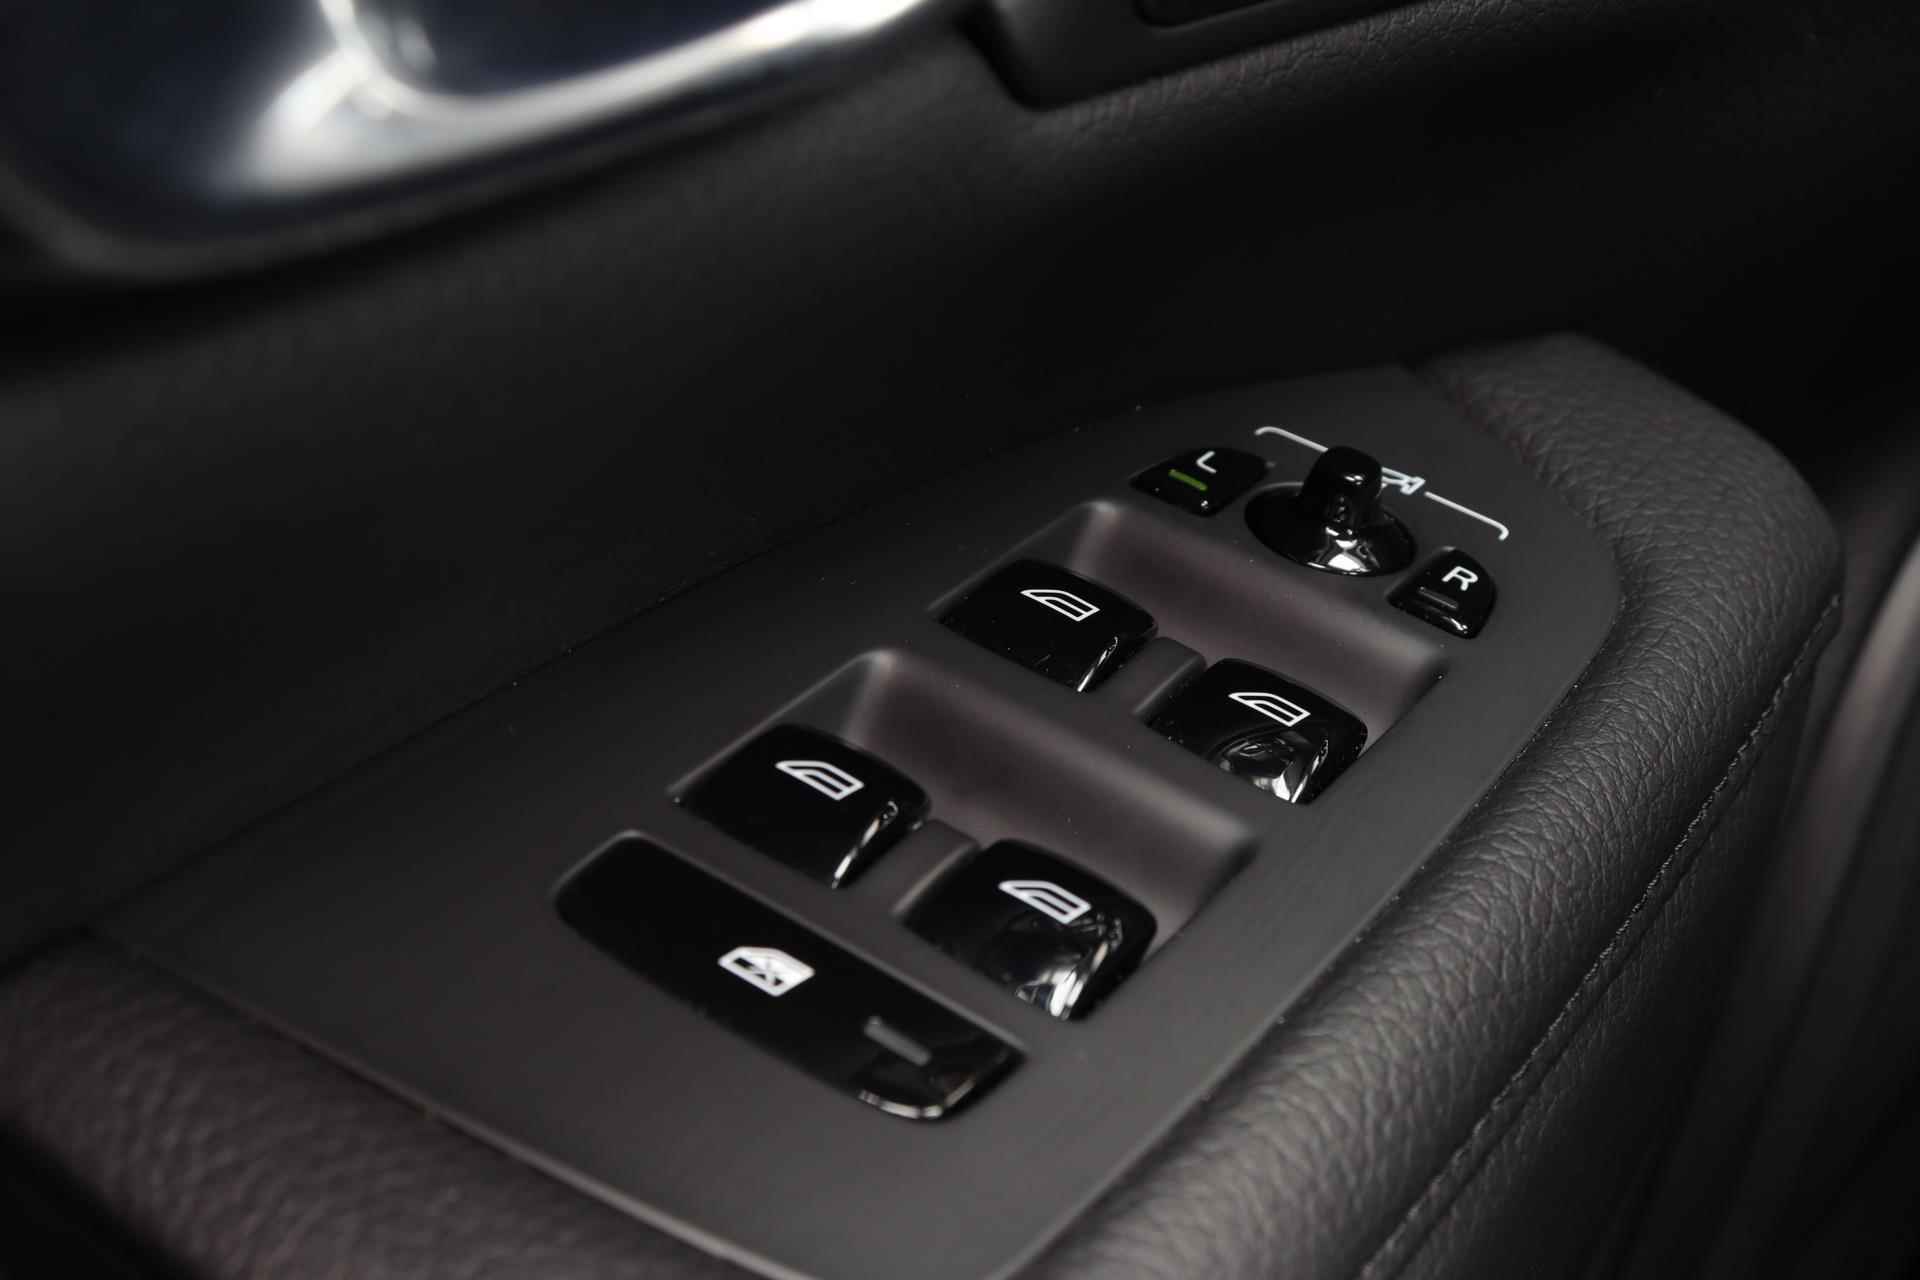 Volvo V90 T6 AWD Recharge Inscription - Panorama/schuifdak - IntelliSafe Assist & Surround - Harman/Kardon audio - Adaptieve LED koplampen - Parkeercamera achter - Verwarmde voorstoelen & stuur - Parkeersensoren voor & achter - Elektr. bedienb. voorstoelen met geheugen - Standkachel - 19' LMV - 20/33